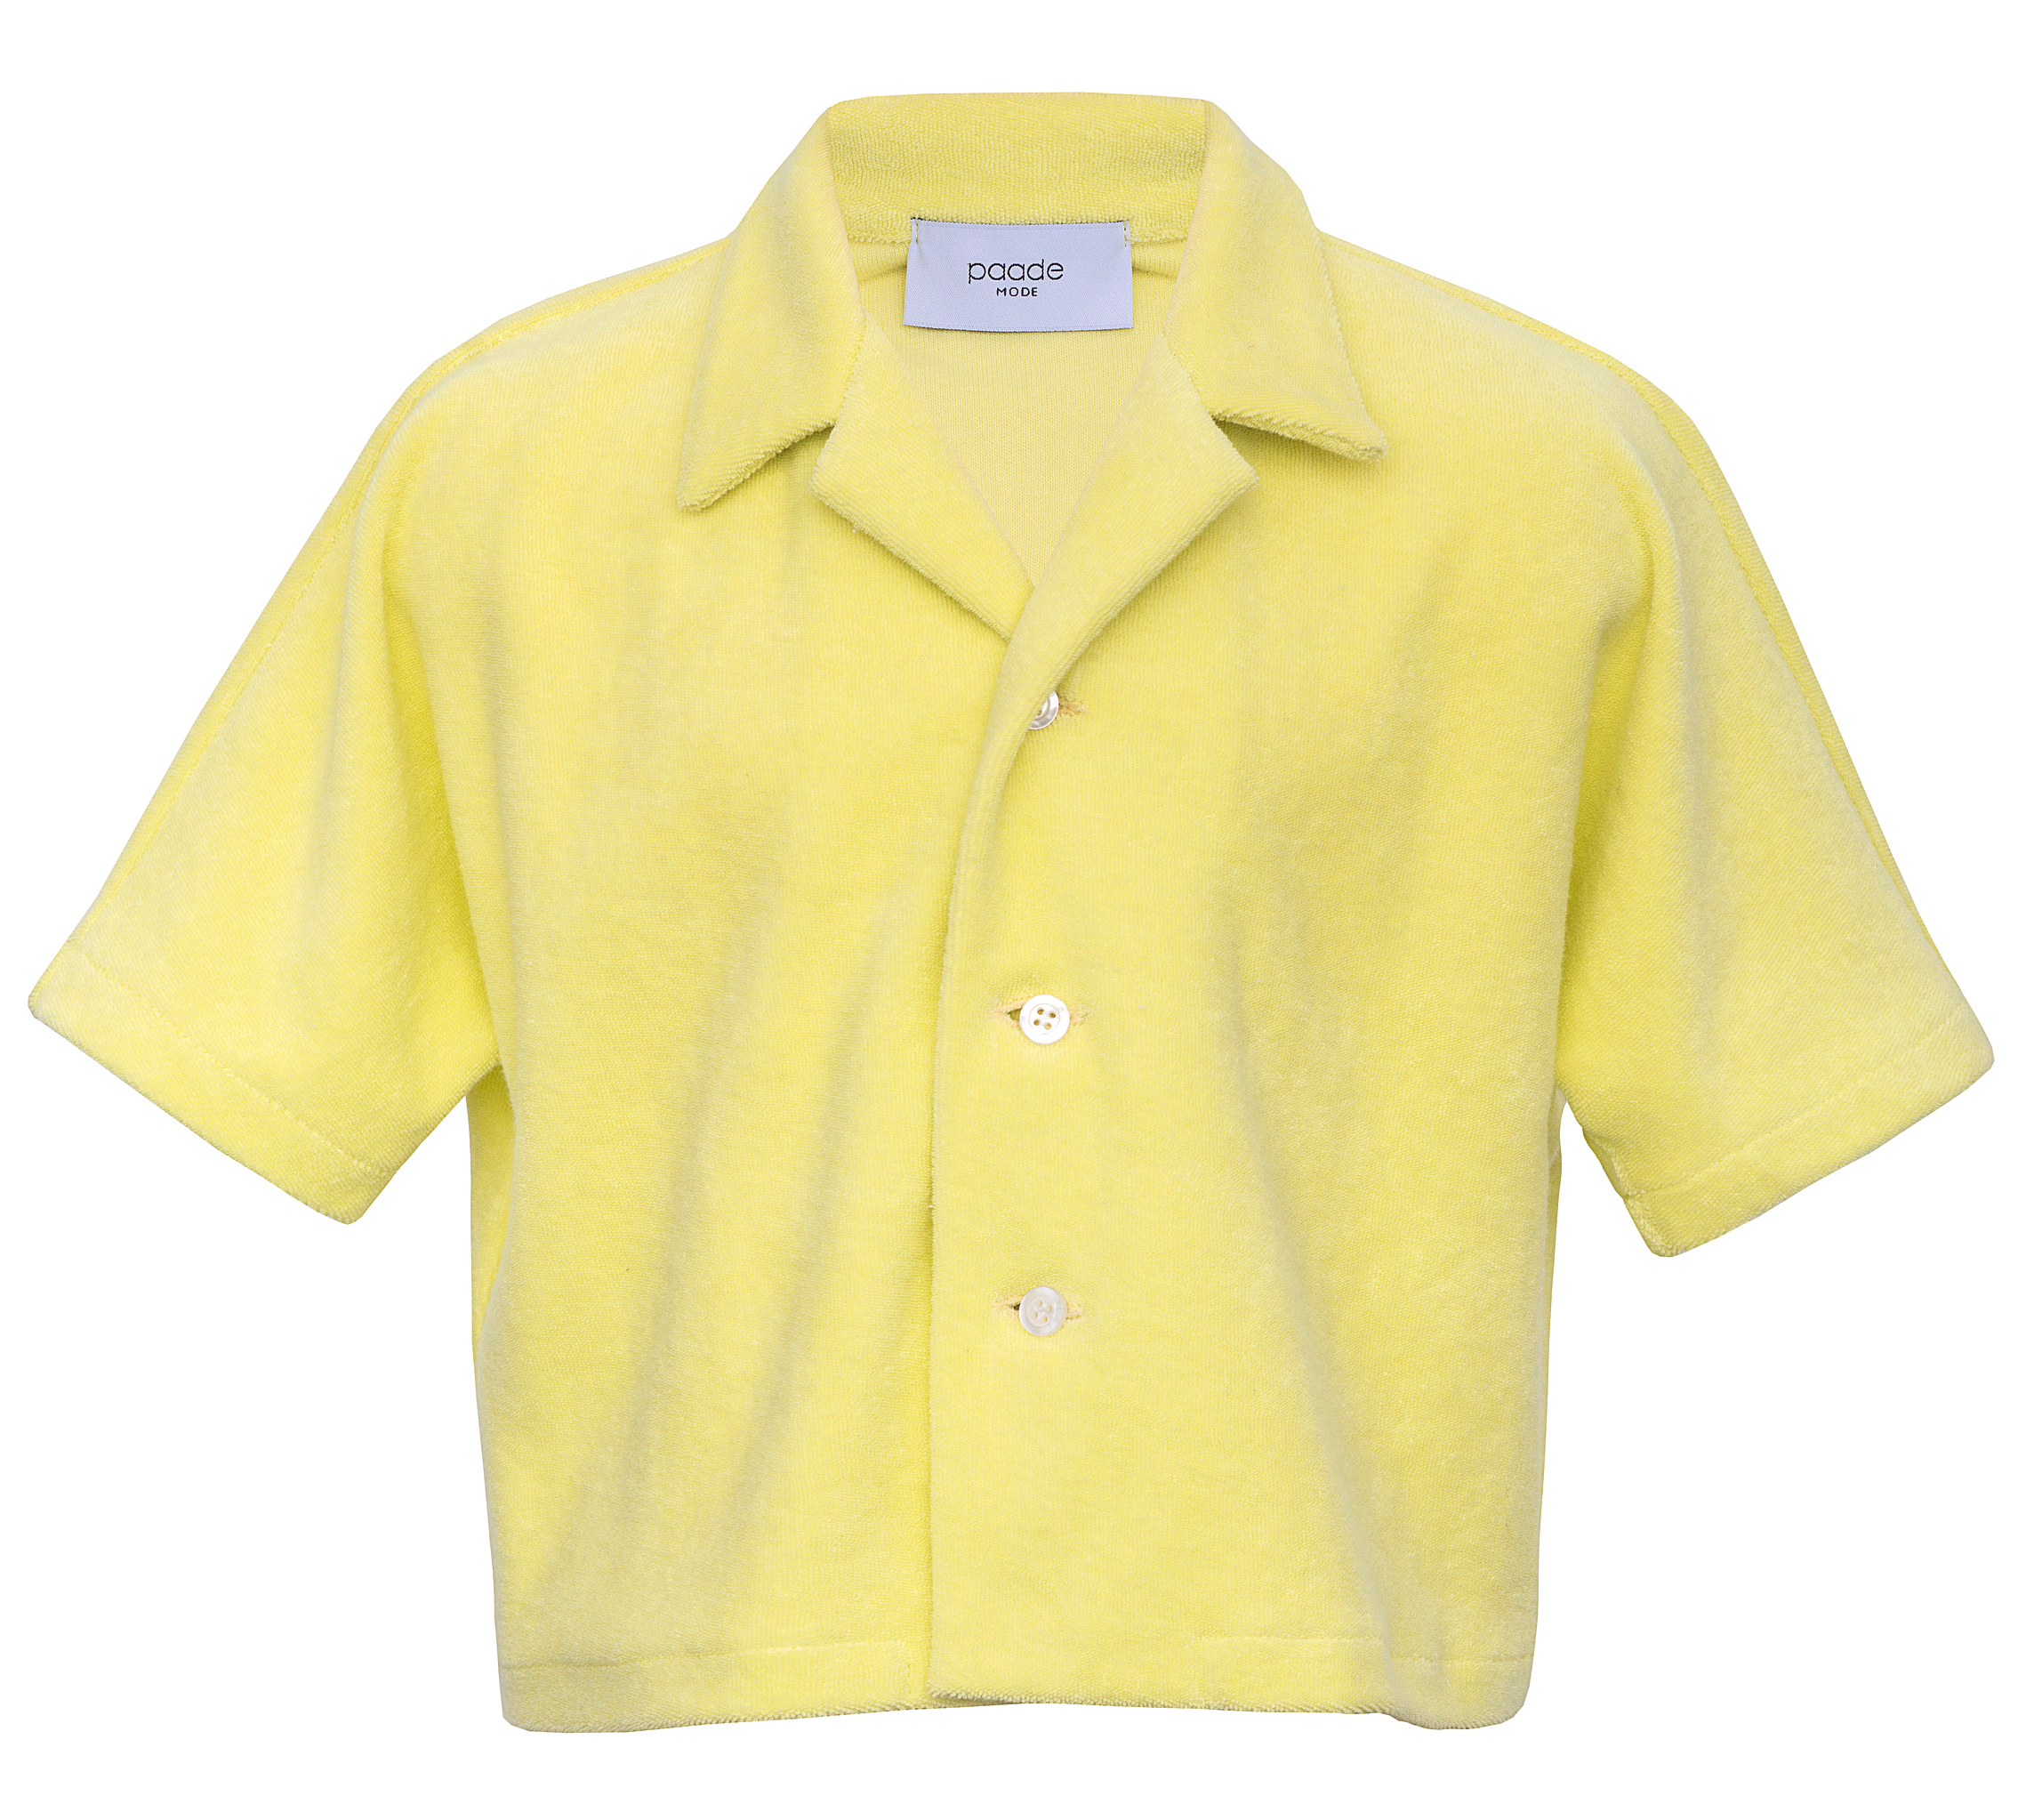                                                                                                                                                           Terry  Shirt-Yellow